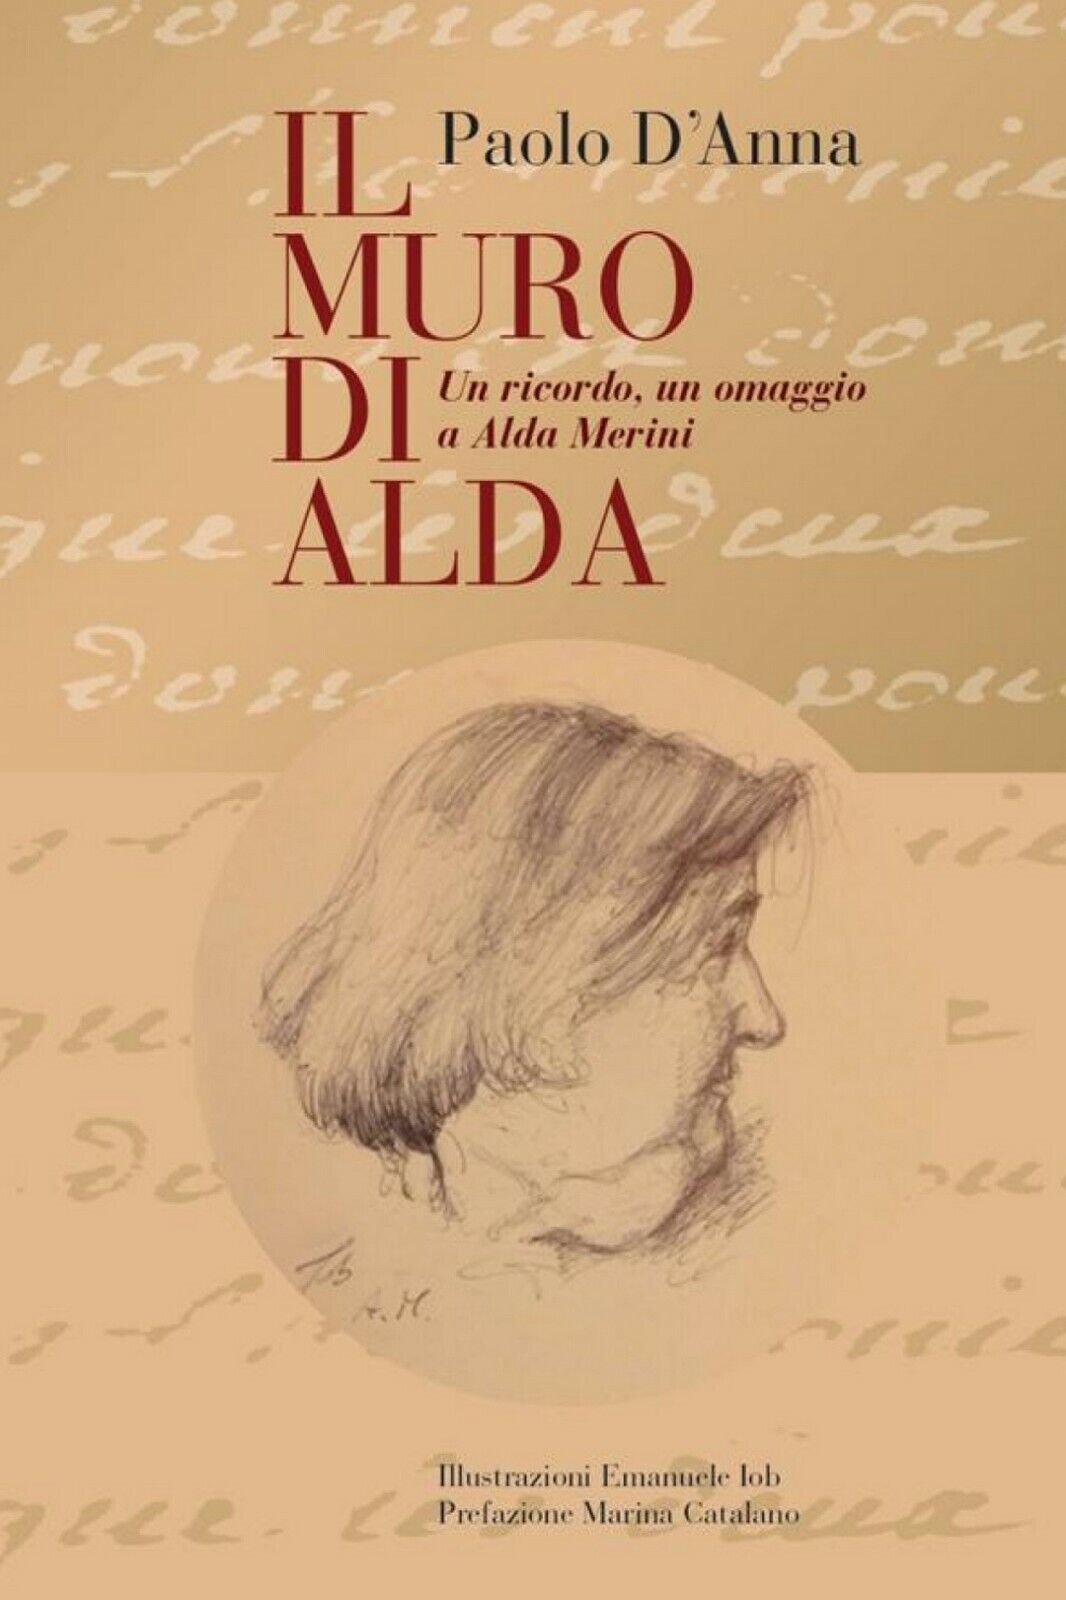 IL MURO DI ALDA un ricordo, un omaggio a Alda Merini  di Paolo d'Anna,  2019